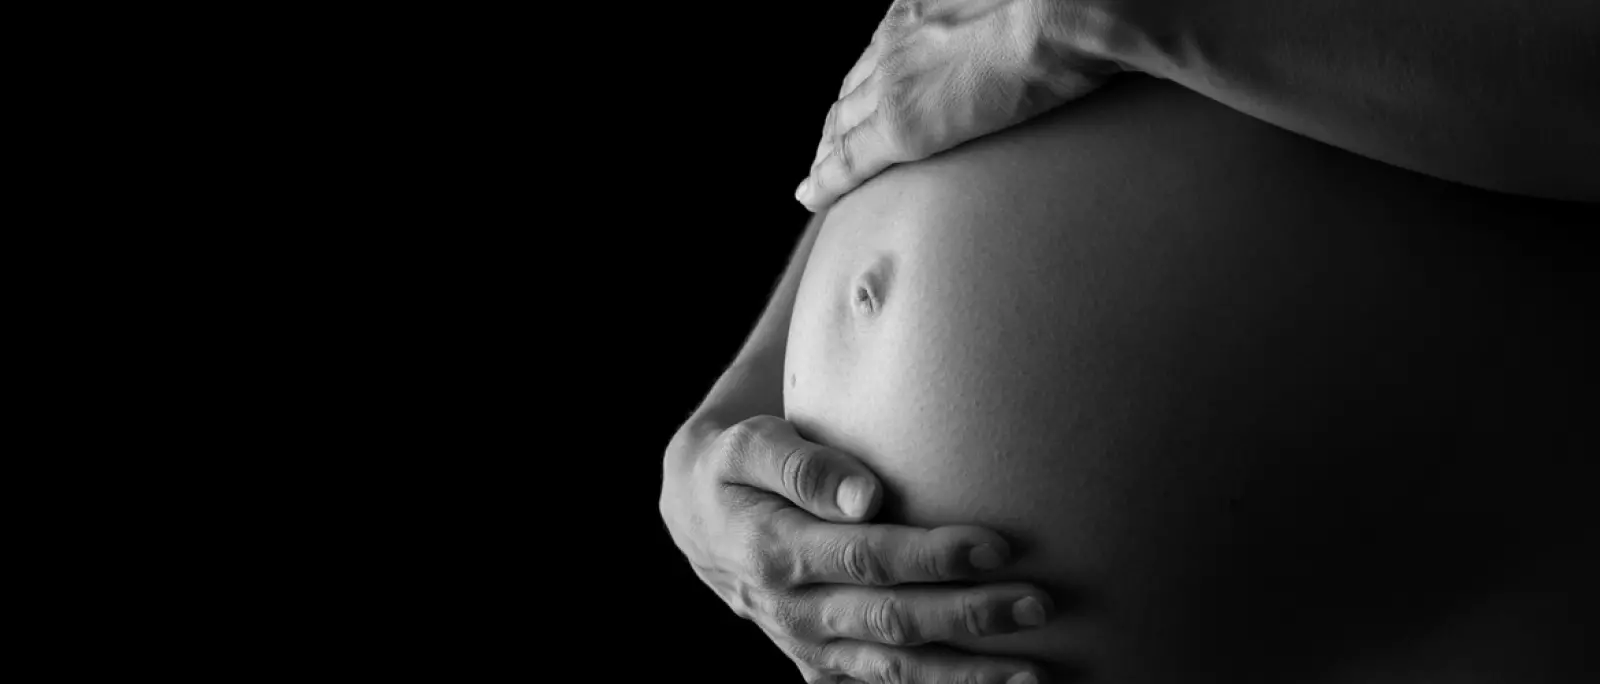 Brasil bate recorde de mortalidade materna: 8 mulheres morreram por dia em 2021